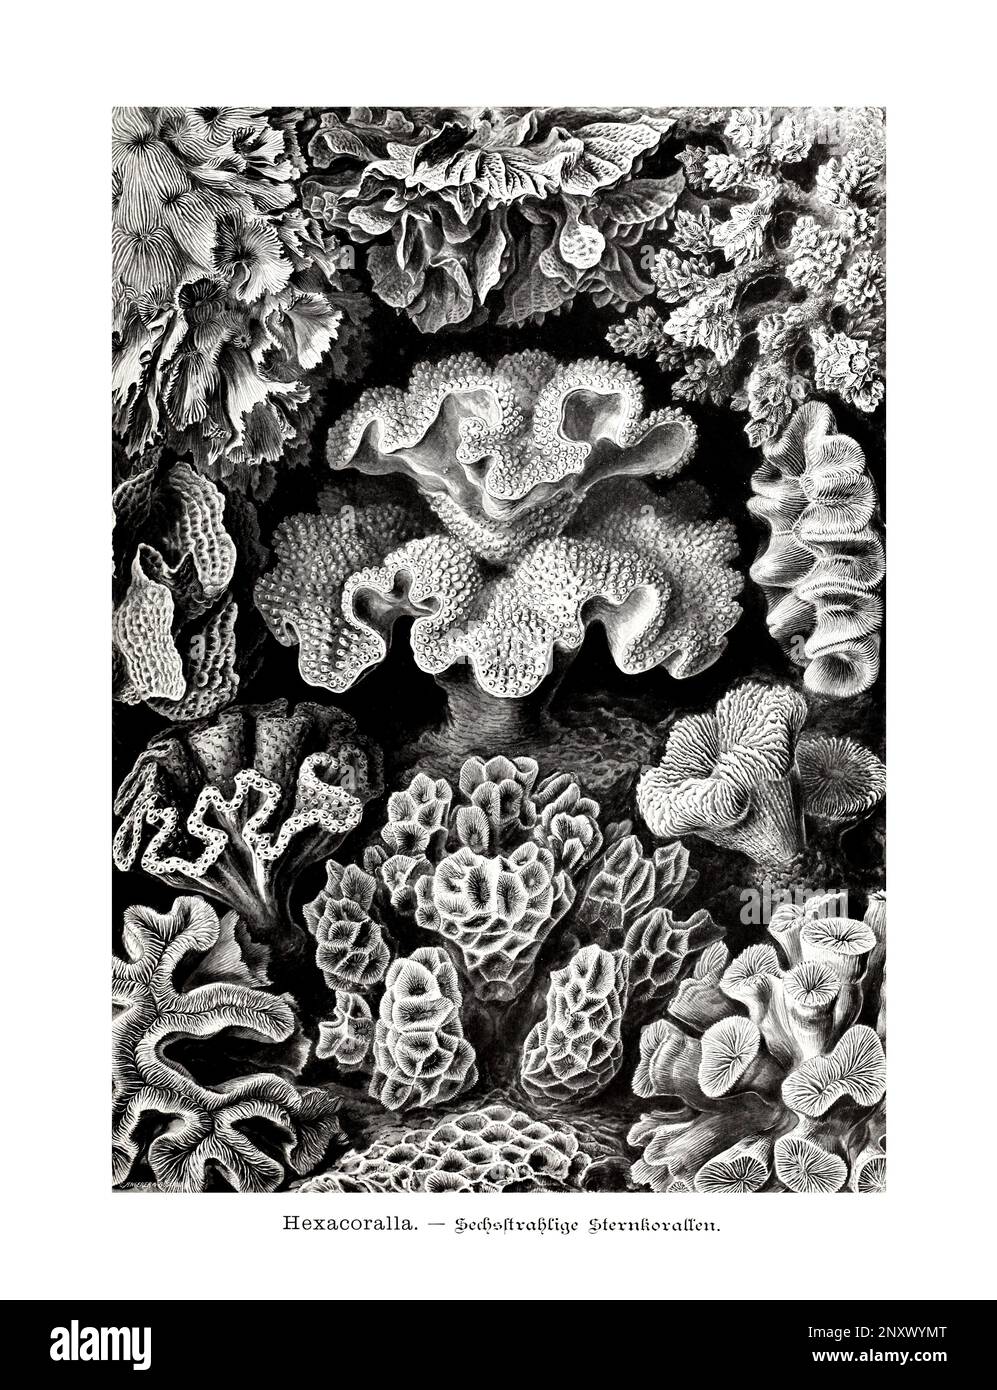 ERNST HAECKEL ART - Hexacoralla, Korallen - 19. Jahrhundert - Antike zoologische Illustration - Illustrationen des Buches : "Kunstformen in der Natur" Stockfoto